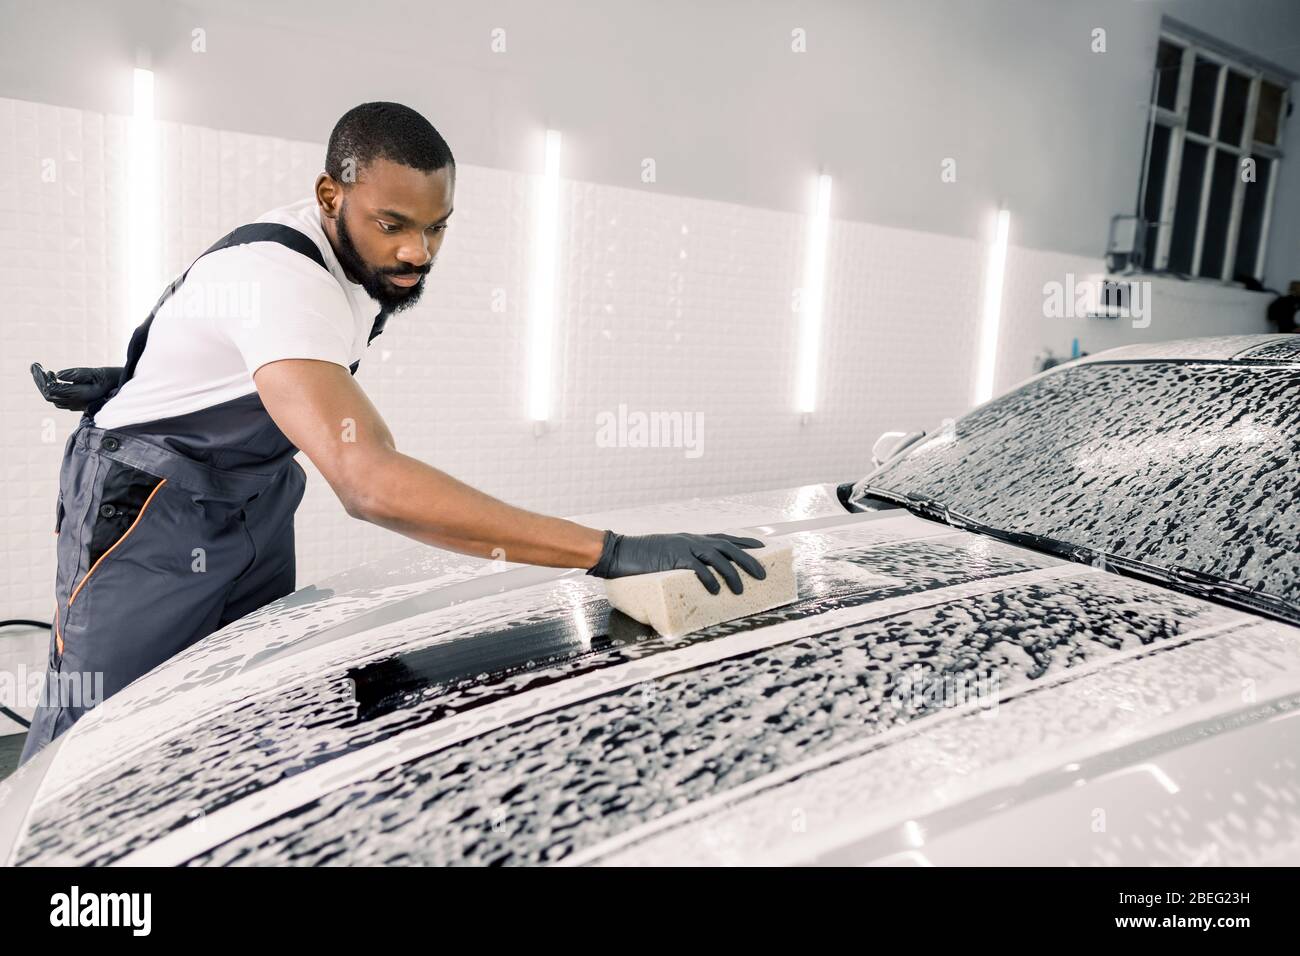 Lavar el coche y limpiar con jabón y esponja. Joven trabajador africano  americano concentrado, con overoles grises y guantes negros lavando la  capucha de coche jabonosa Fotografía de stock - Alamy